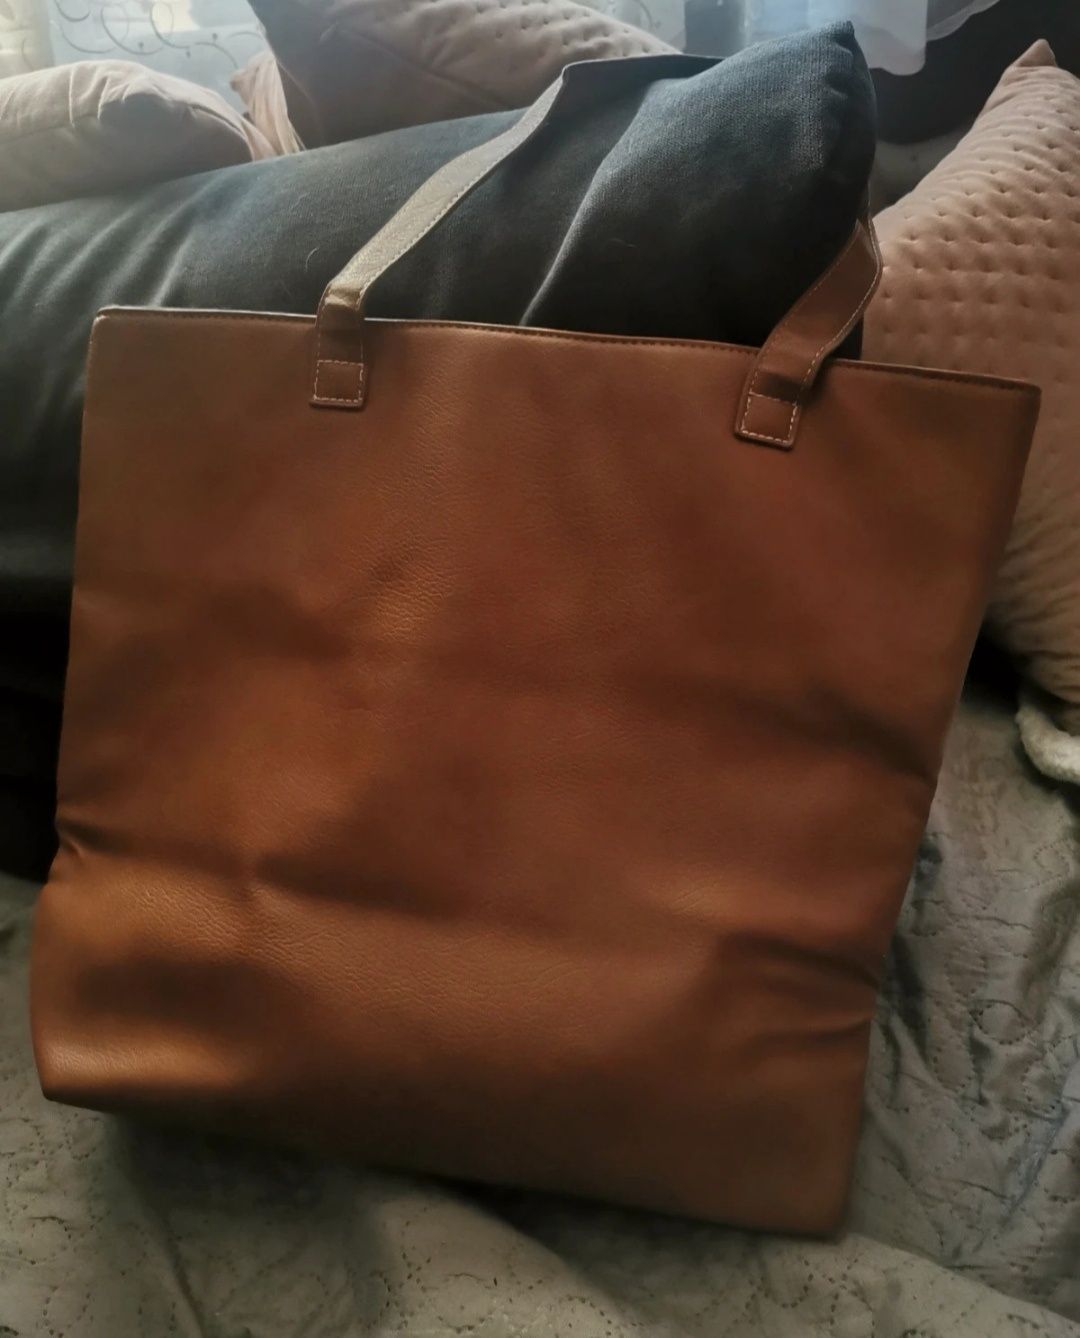 Nowa torba Jet Set Tote Bag Avon brązowa trzy kolory shopper